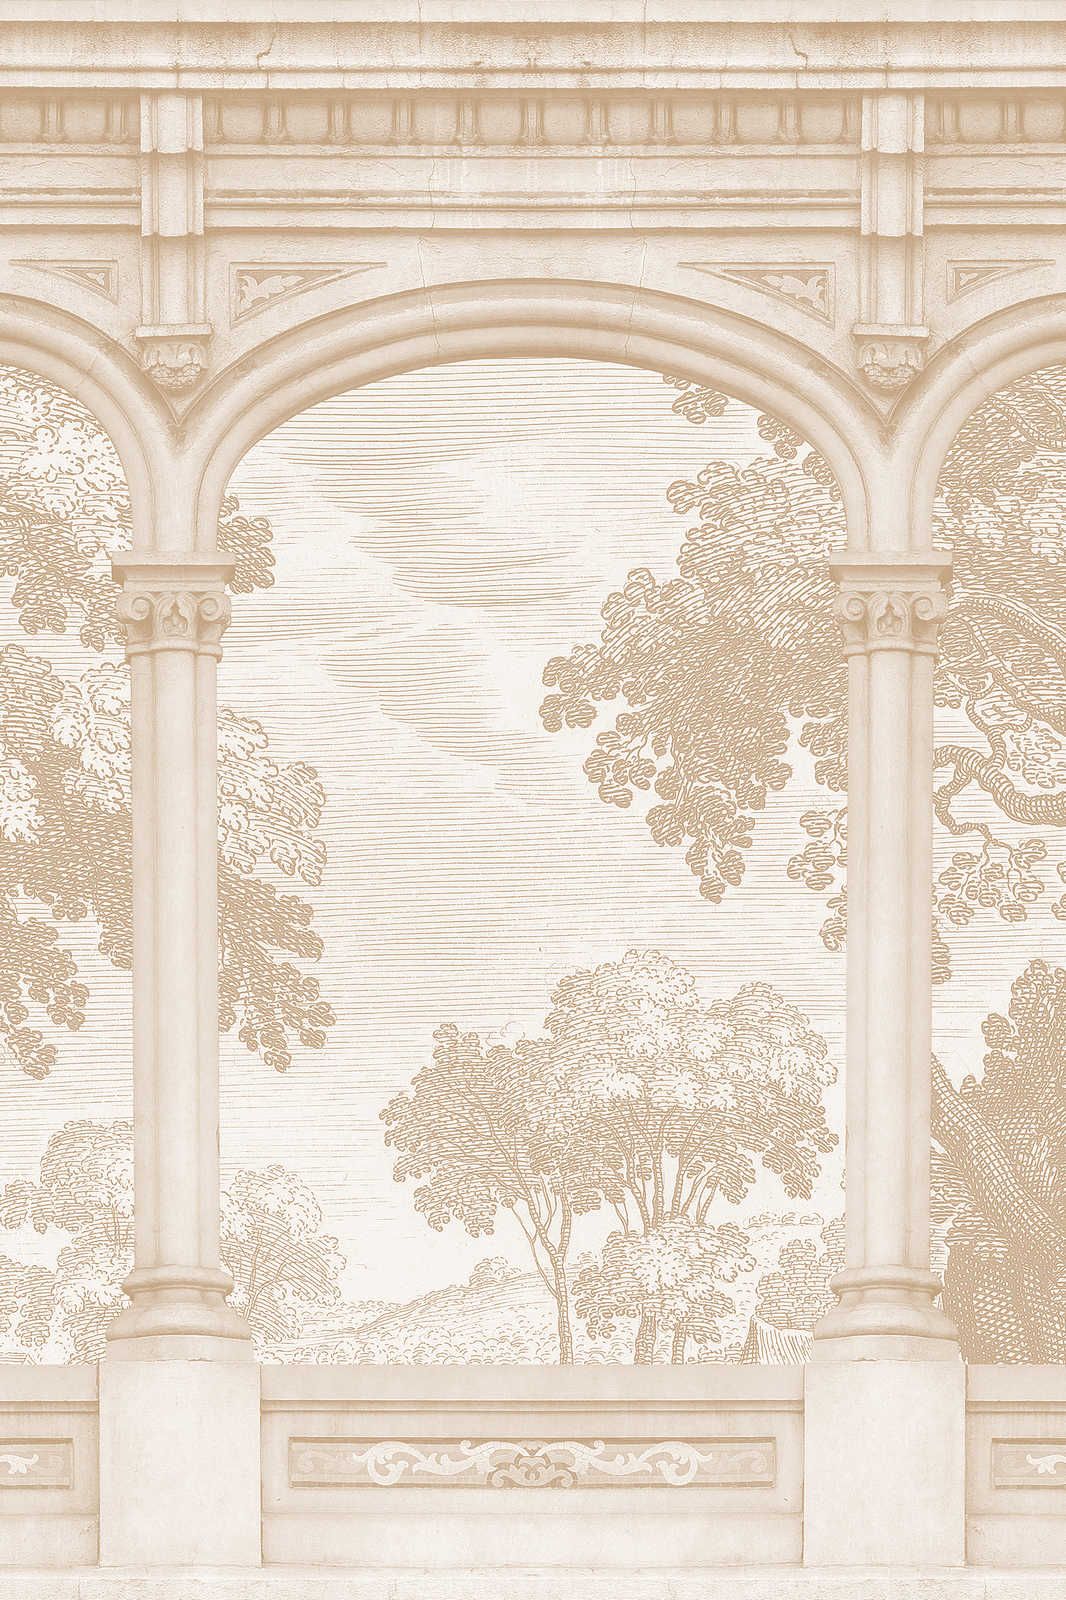             Roma 2 - Toile beige Historic Style avec fenêtre en arc de cercle - 0,90 m x 0,60 m
        